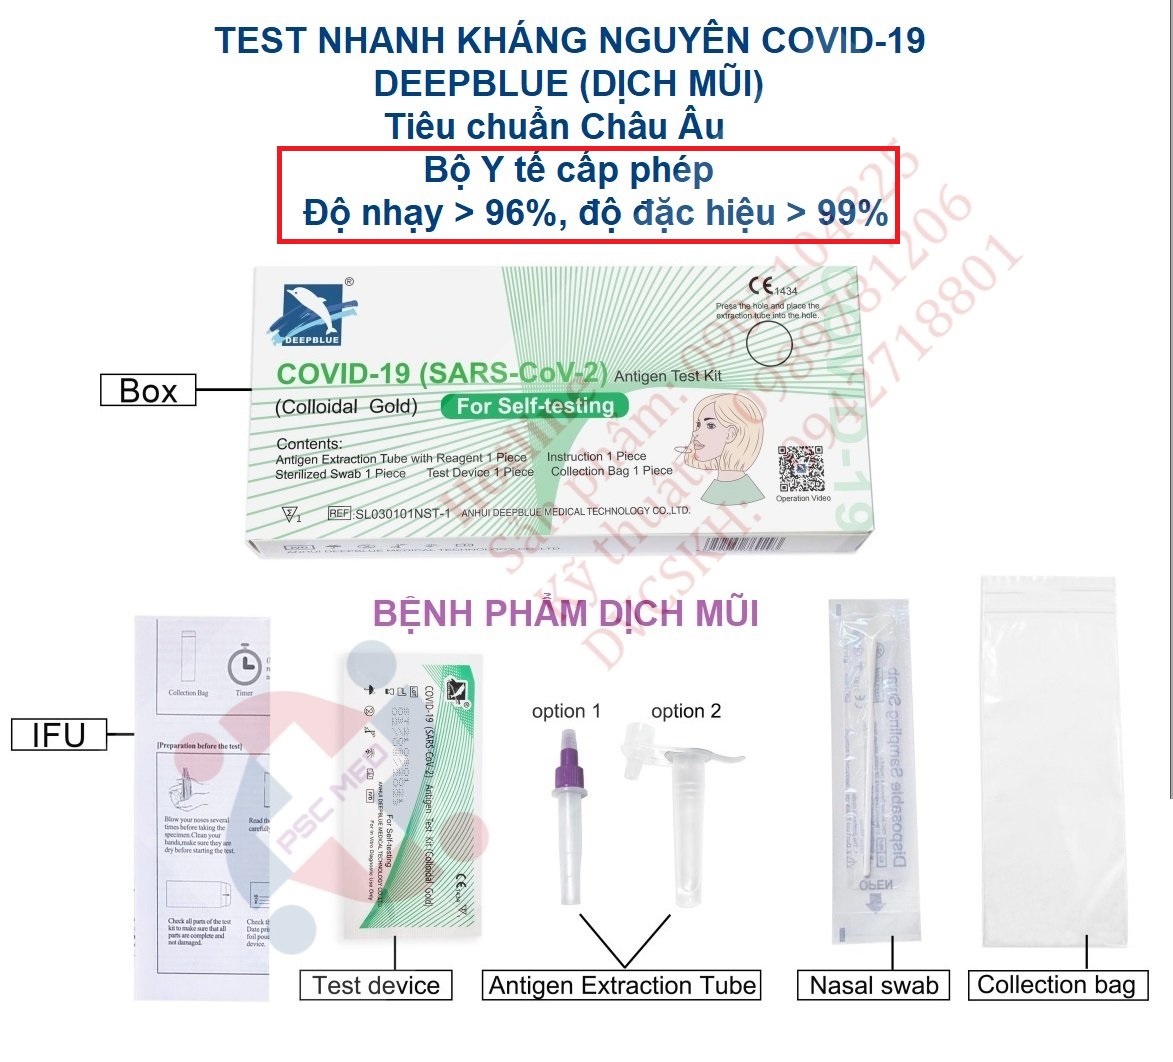 Test nhanh Covid -19 ANHUI DEEPBLUE - Bệnh phẩm dịch mũi (ngoáy nông) thumbnail